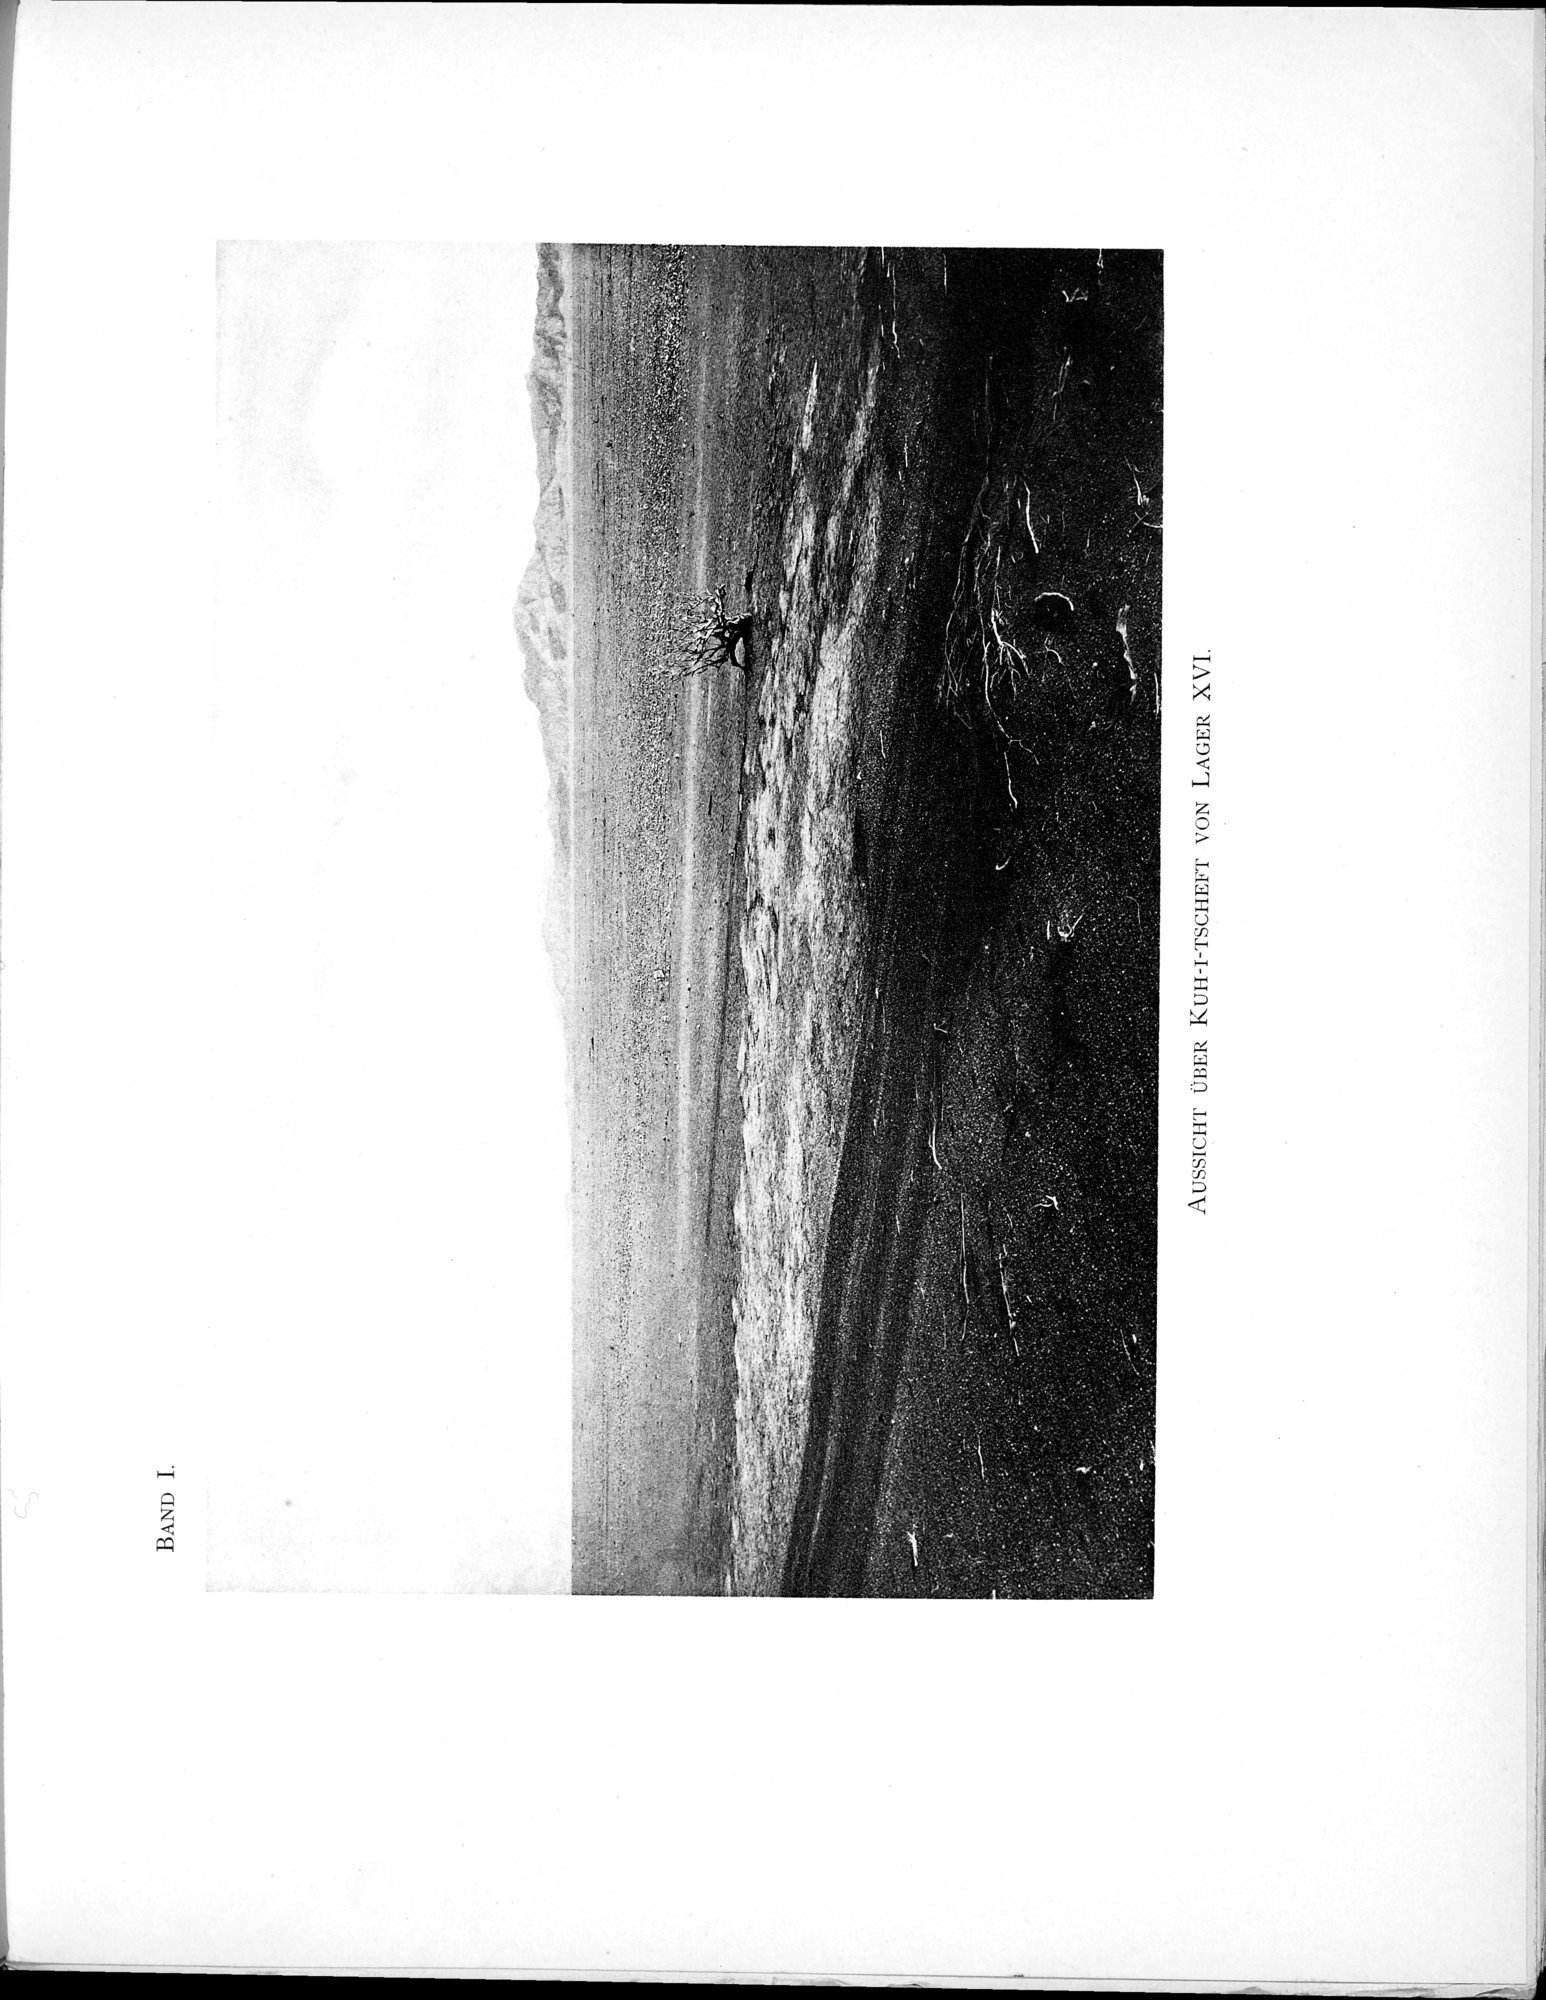 Eine Routenaufnahme durch Ostpersien : vol.1 / Page 57 (Grayscale High Resolution Image)